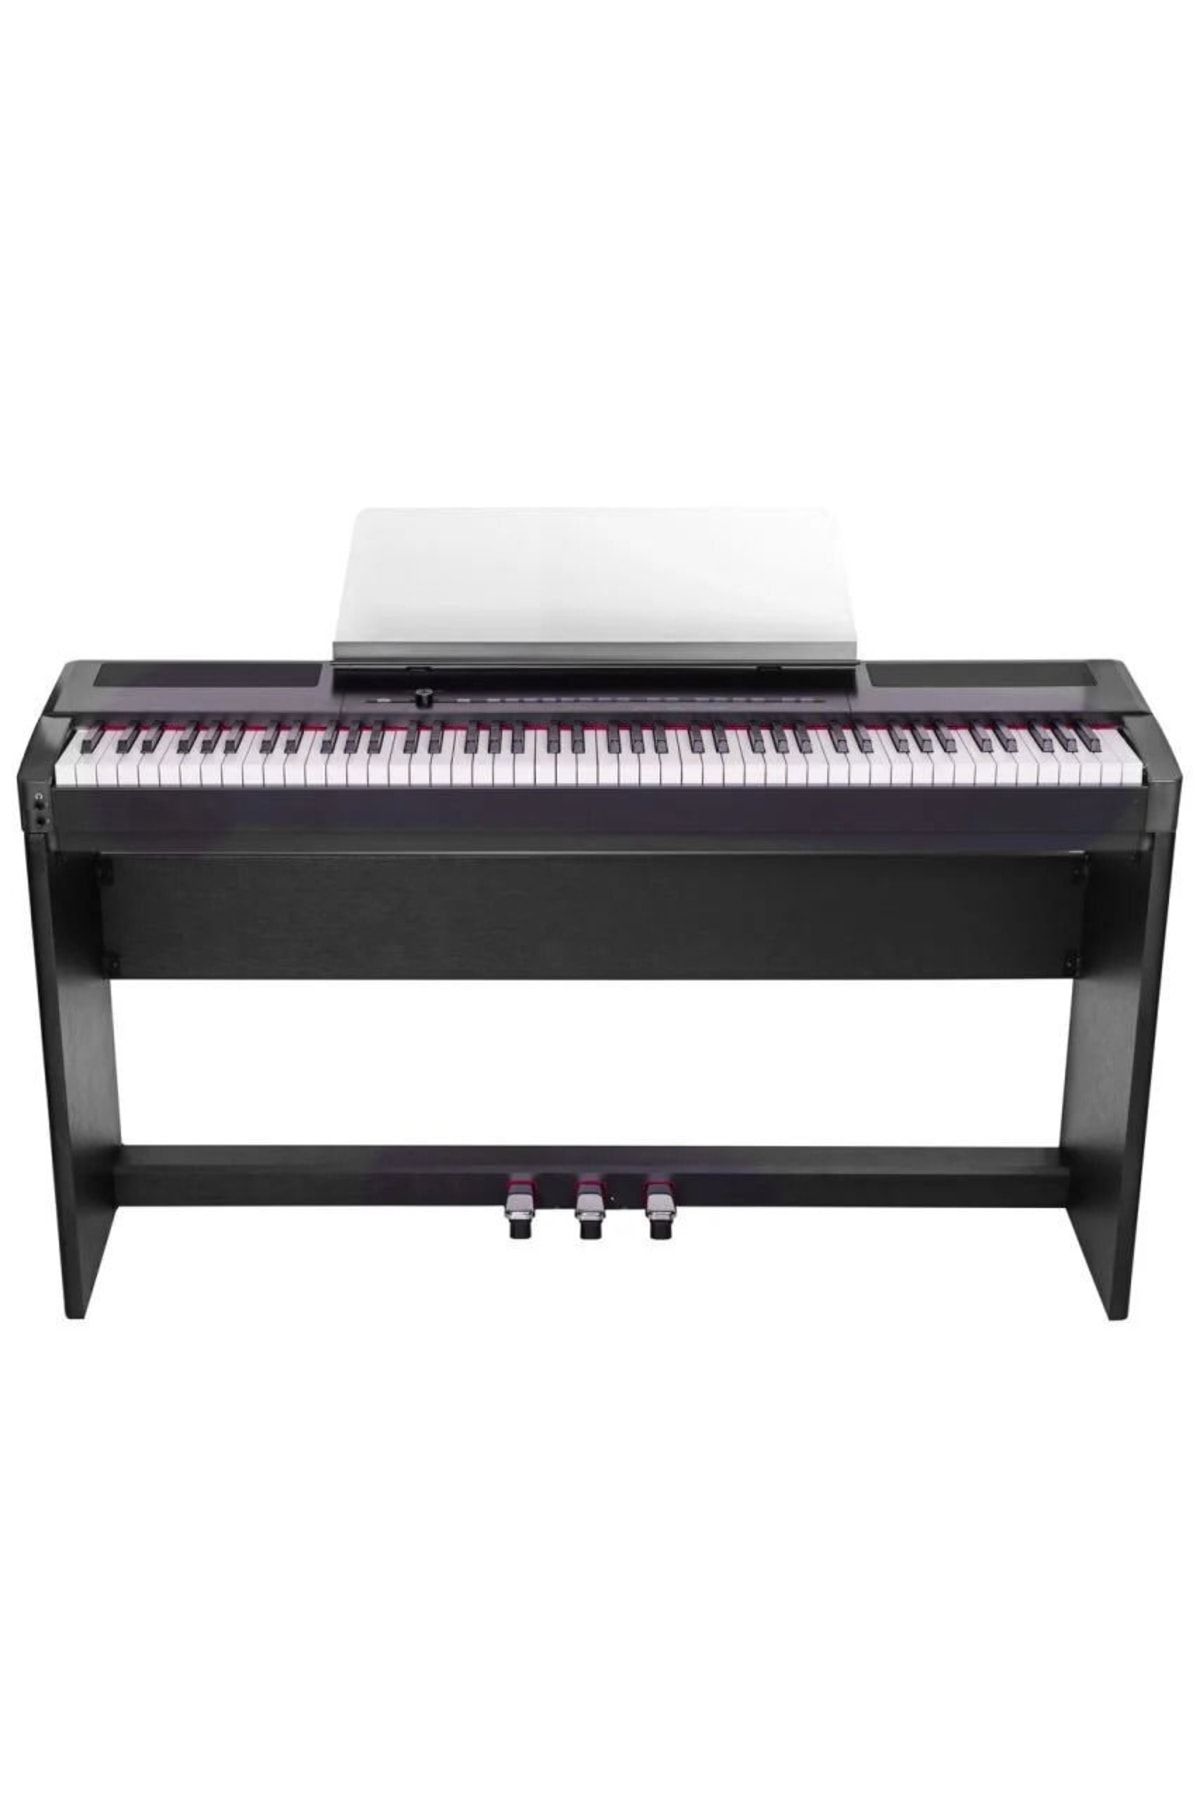 VALLER S8 Portable Stage Siyah Gülağacı 88 Tuşlu Dijital Piyano ( Stand + Kulaklık )